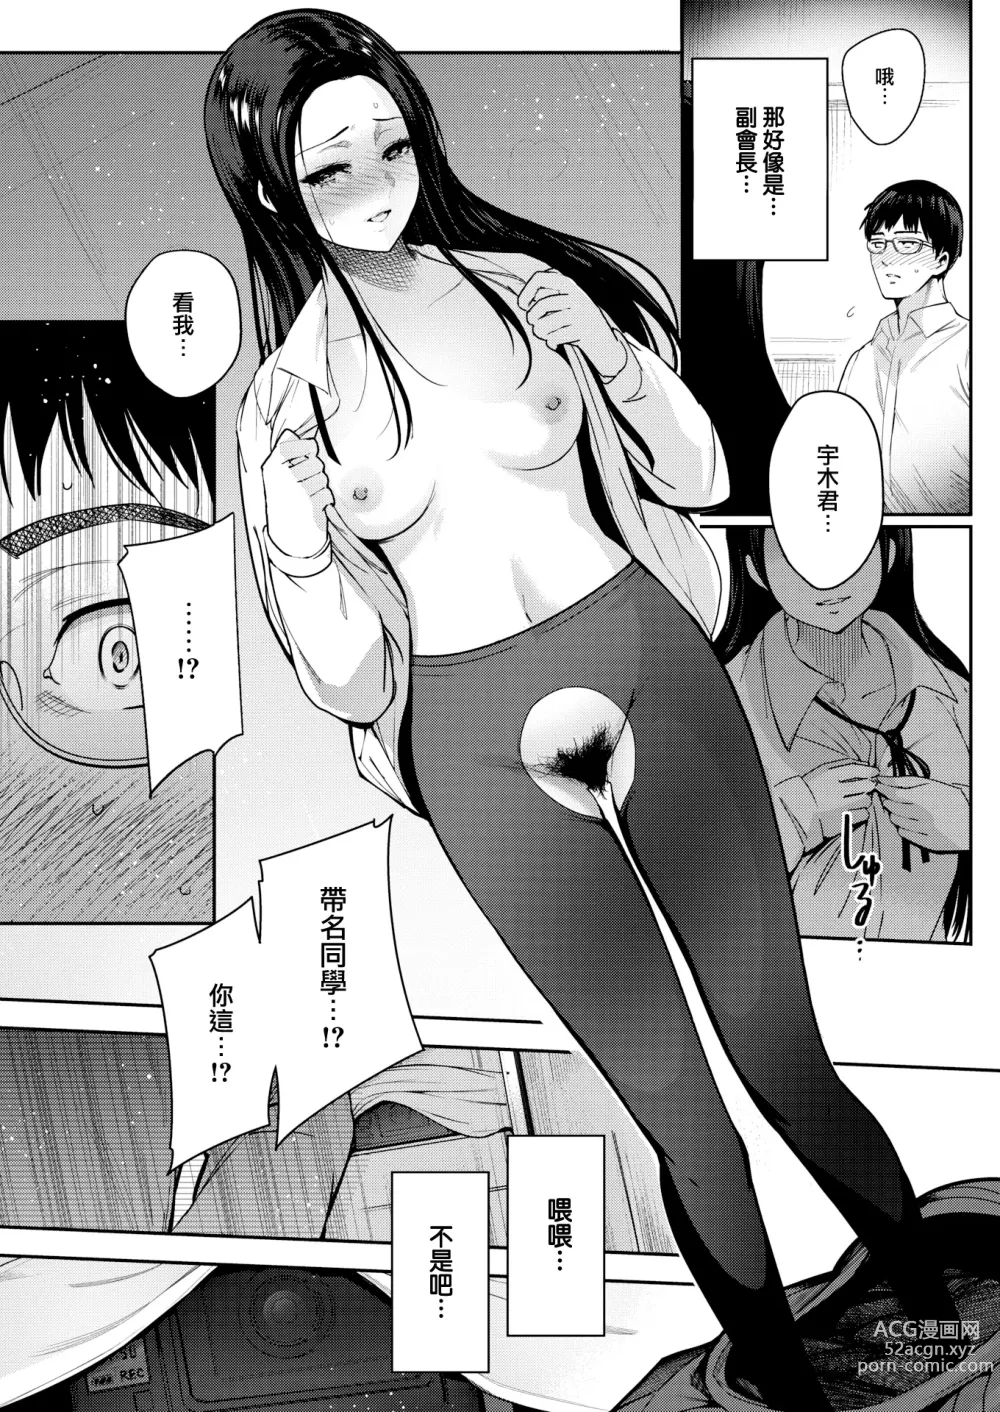 Page 17 of manga Kankou